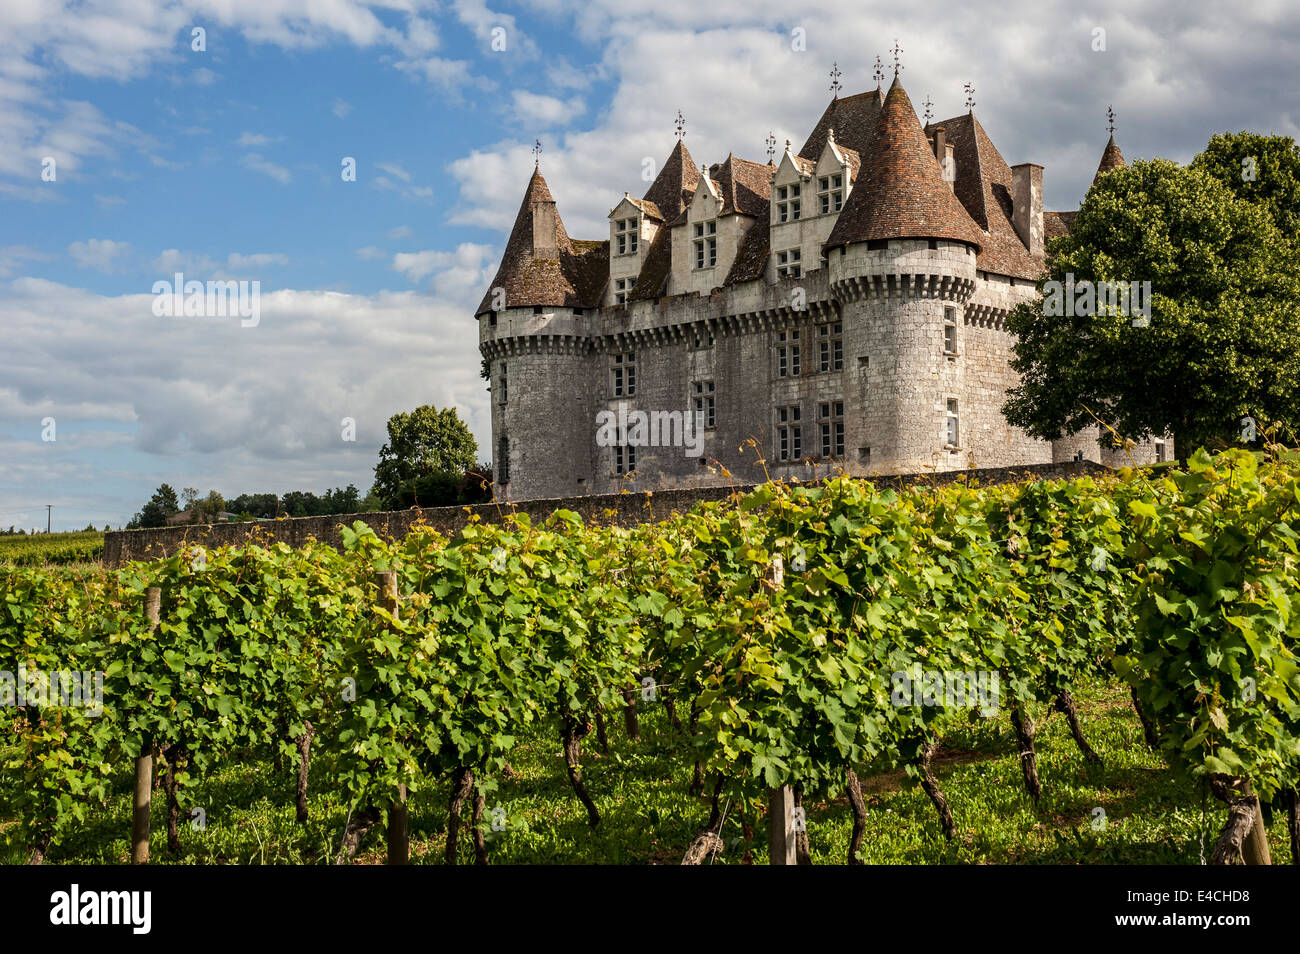 The castle Château de Monbazillac and vineyard, Dordogne, Aquitaine, France Stock Photo